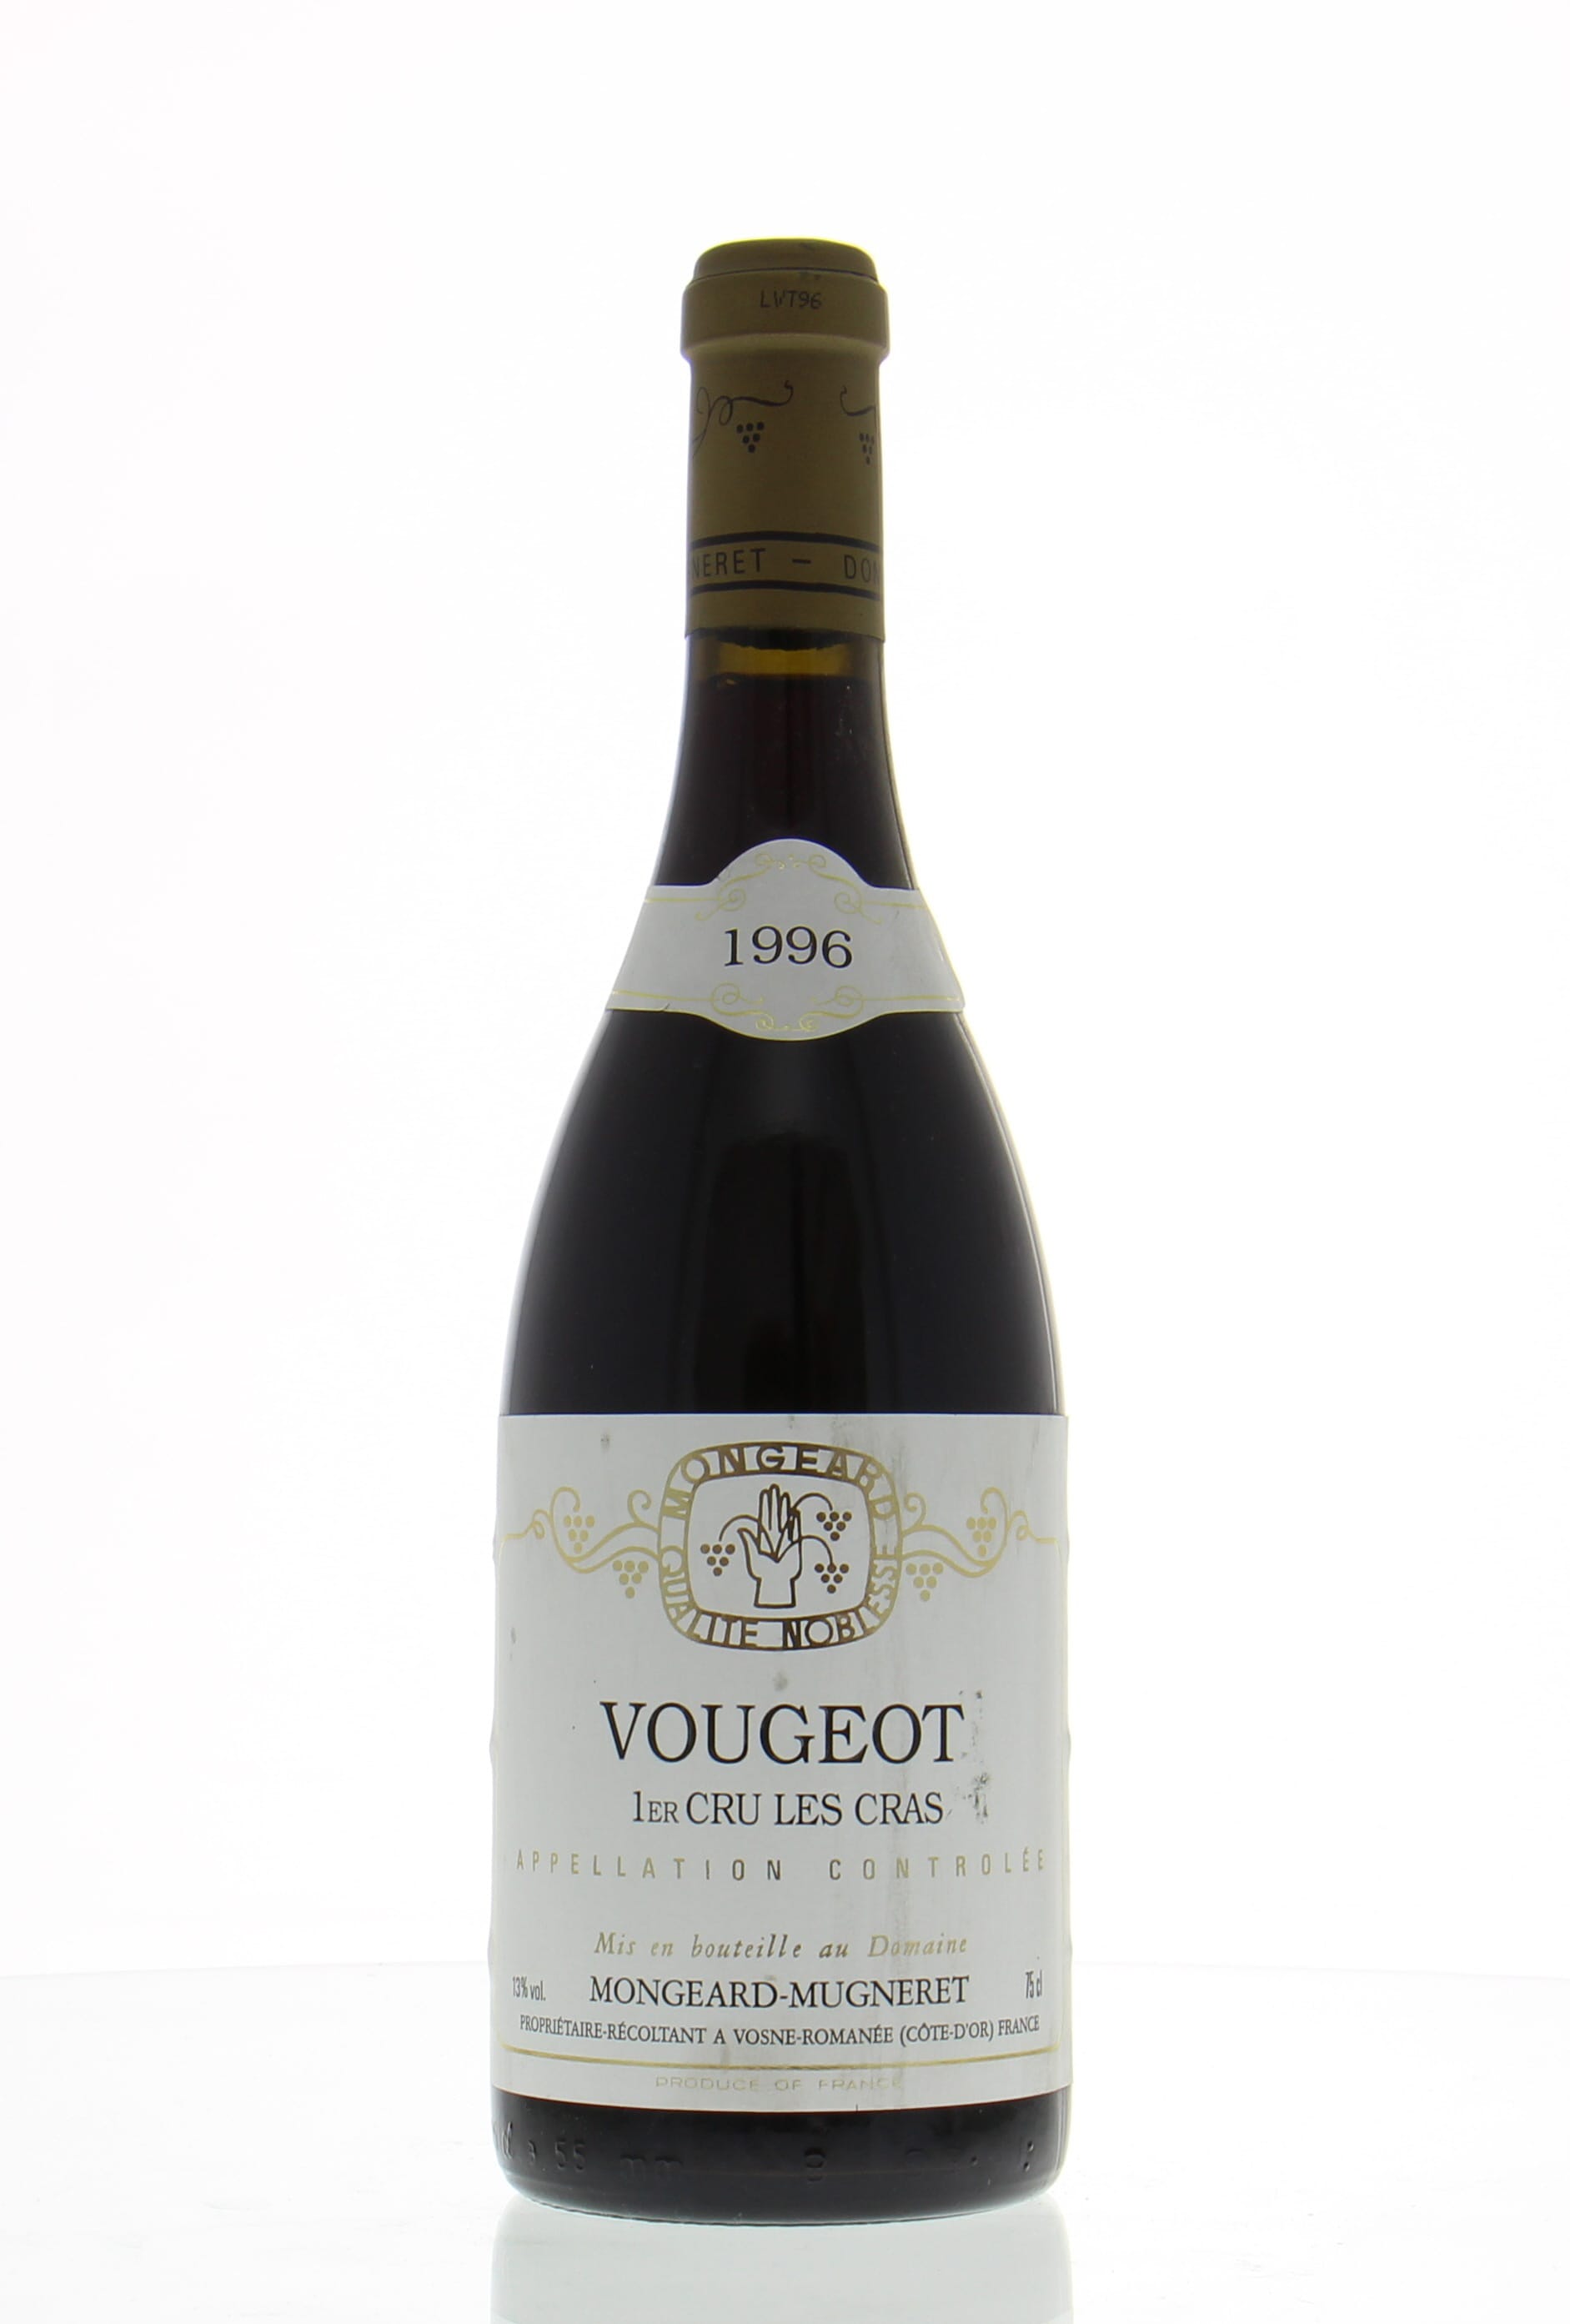 Mongeard-Mugneret - Vougeot Les Cras 1er cru 1996 Perfect,1 bottle without capsule